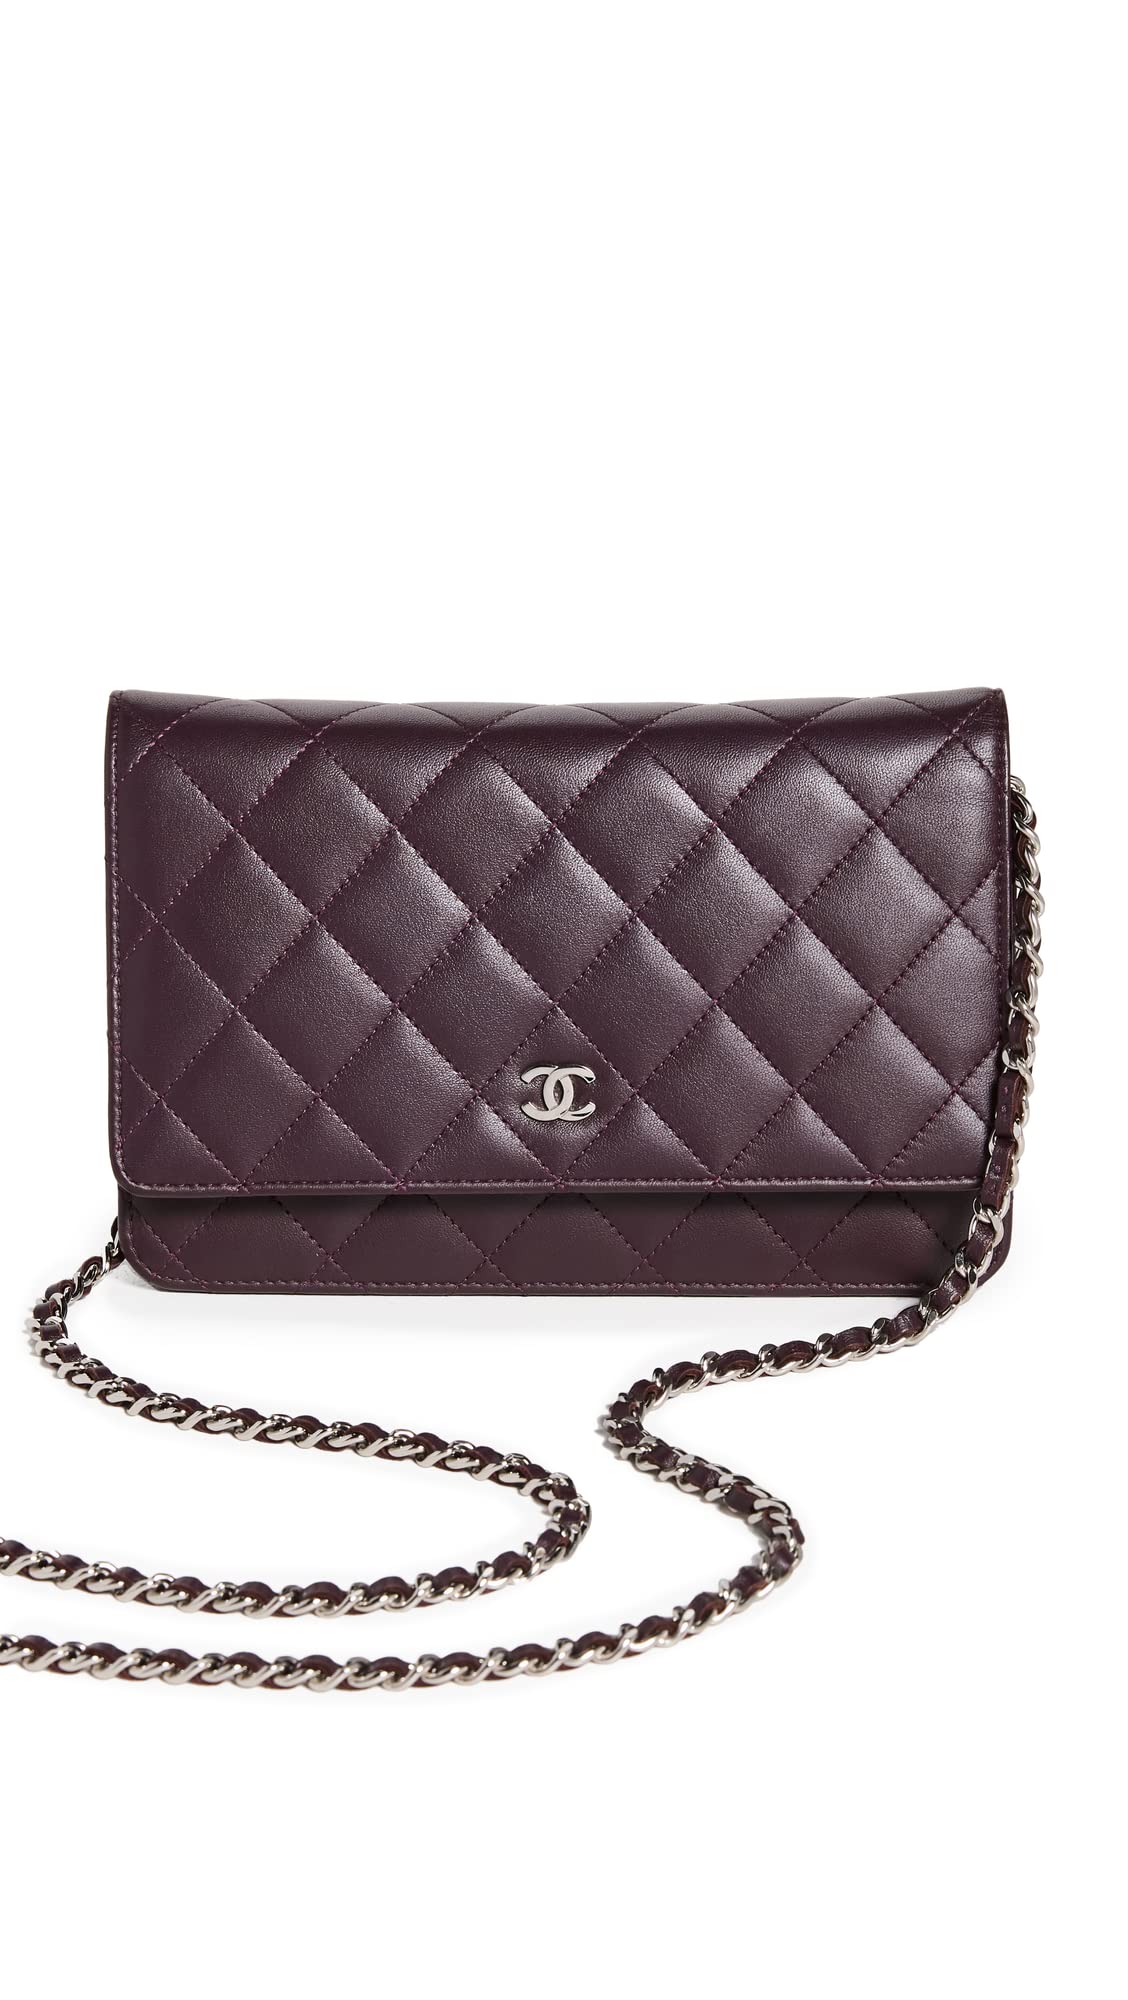 Chanel 19 Bag Wallet On Chain Black  Nice Bag